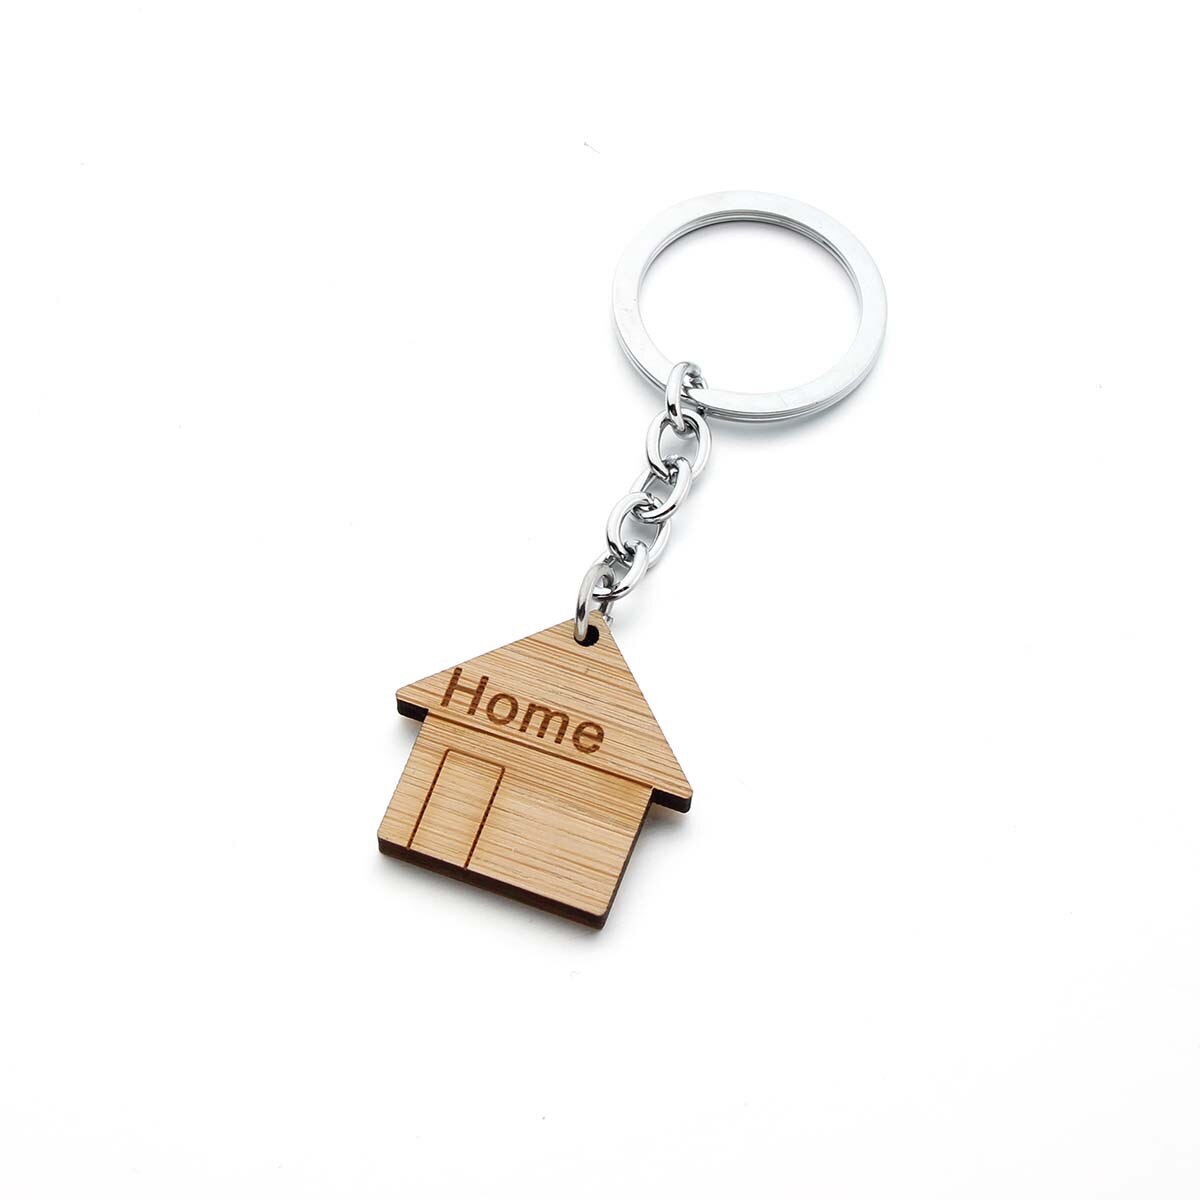 Aktuelt tilgængeligt salg nøgle spænde træ nøglering nøgle spænde hjem hus træ nøgle træ nøgle spænde nøgle spænde nøgle: Lille hjem